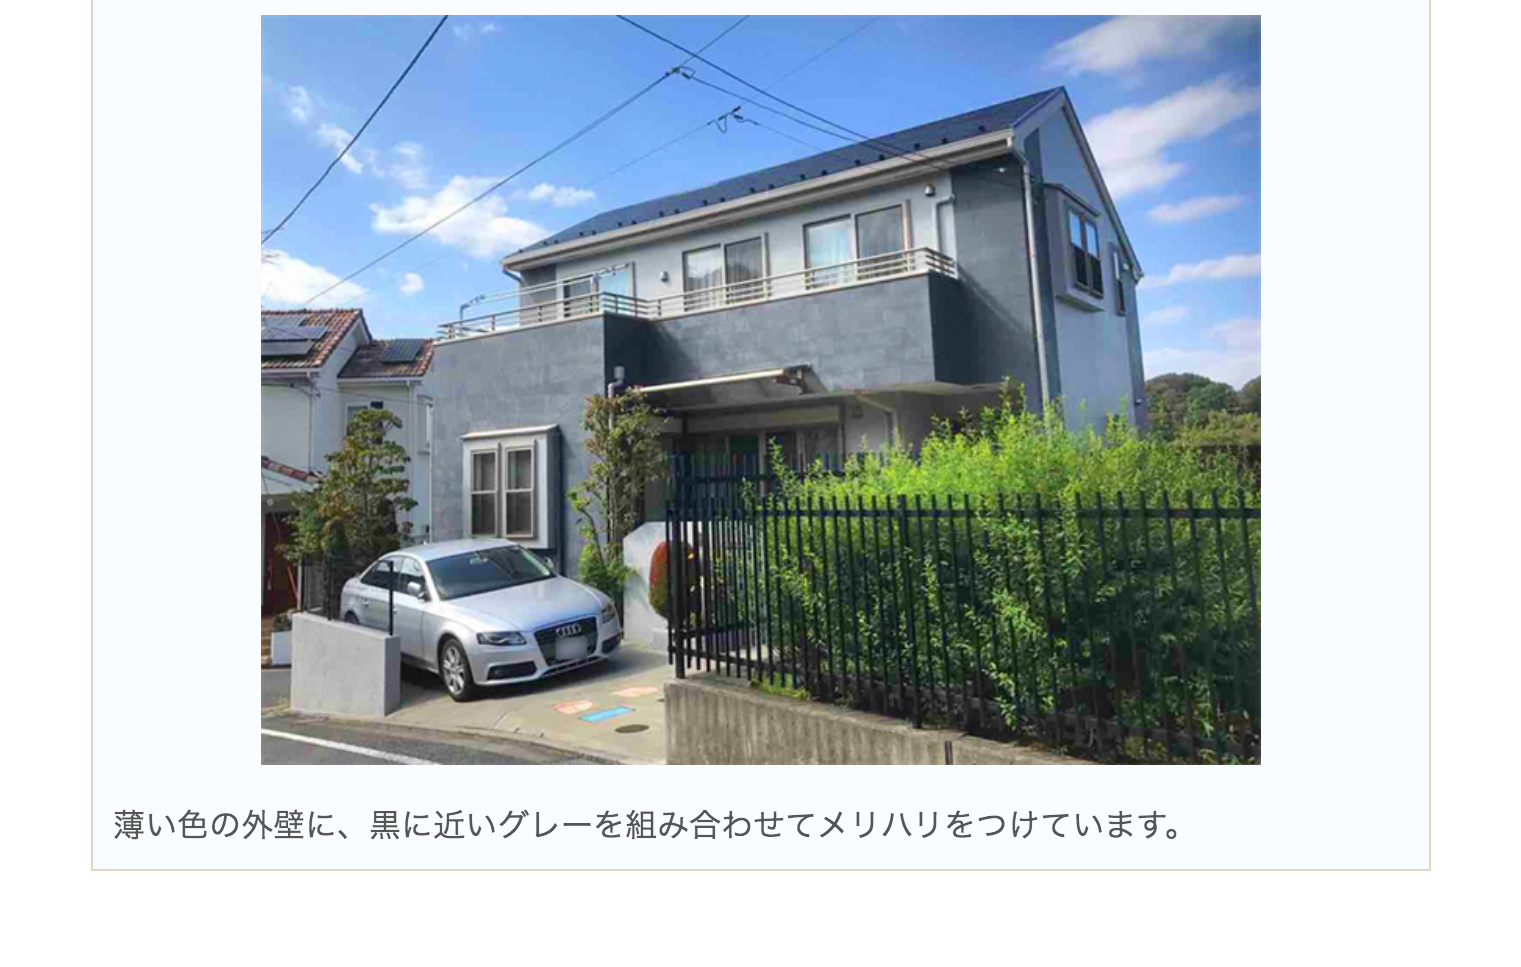 屋根色ならグレーが正解 専門家が推す3つの理由 配色のポイント ユーコーコミュニティー 神奈川 東京の外壁塗装と屋根リフォーム